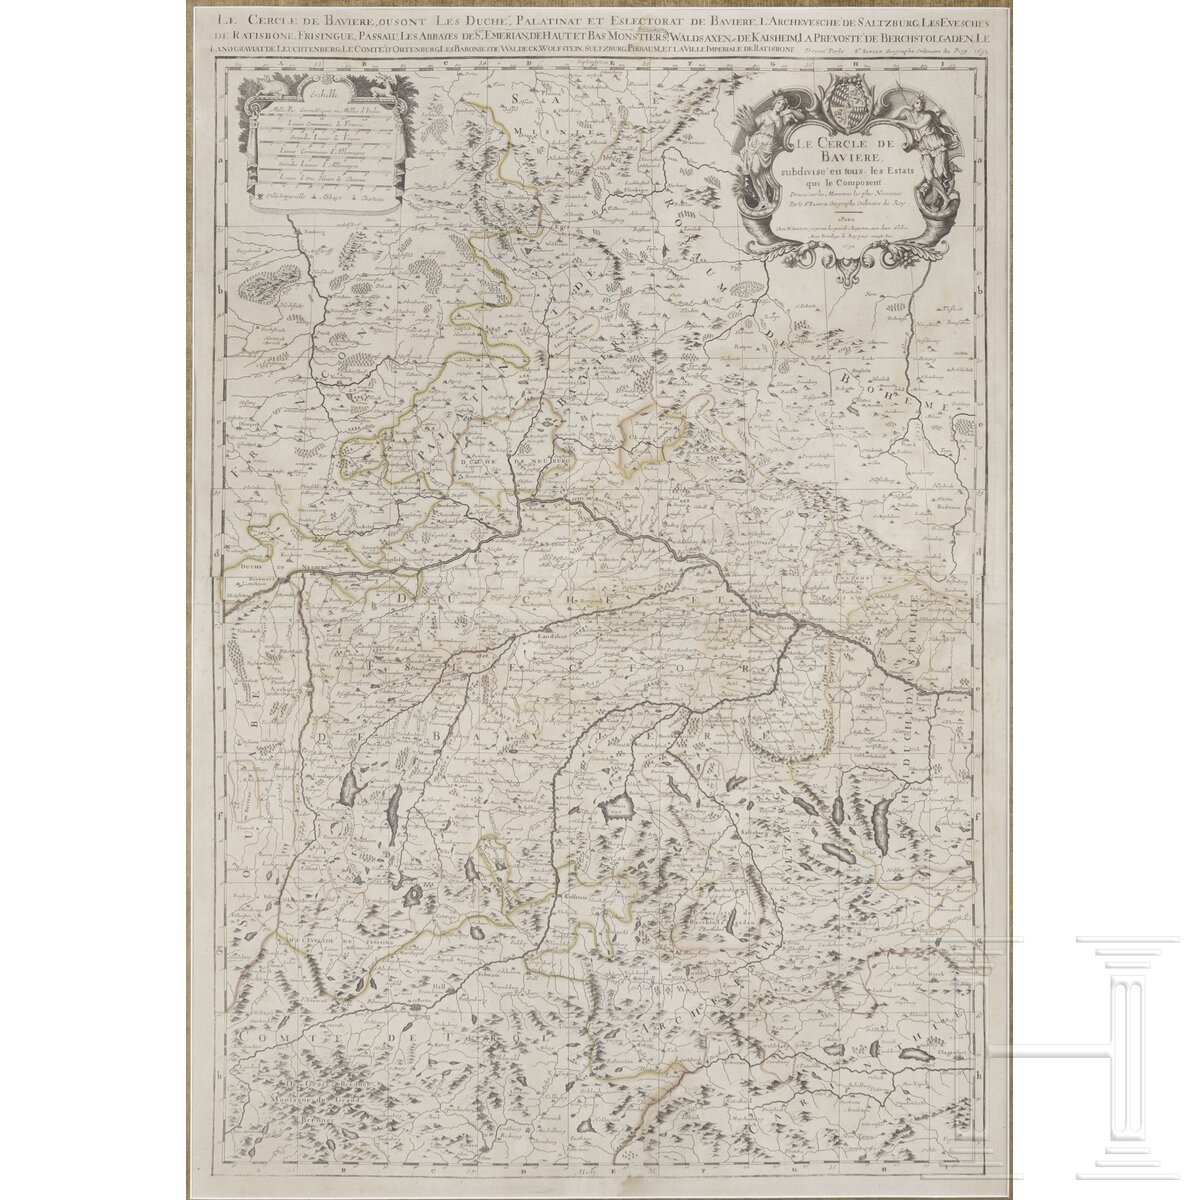 Sanson/Jaillot, Karte der bayerischen Regionen, Paris, 1692